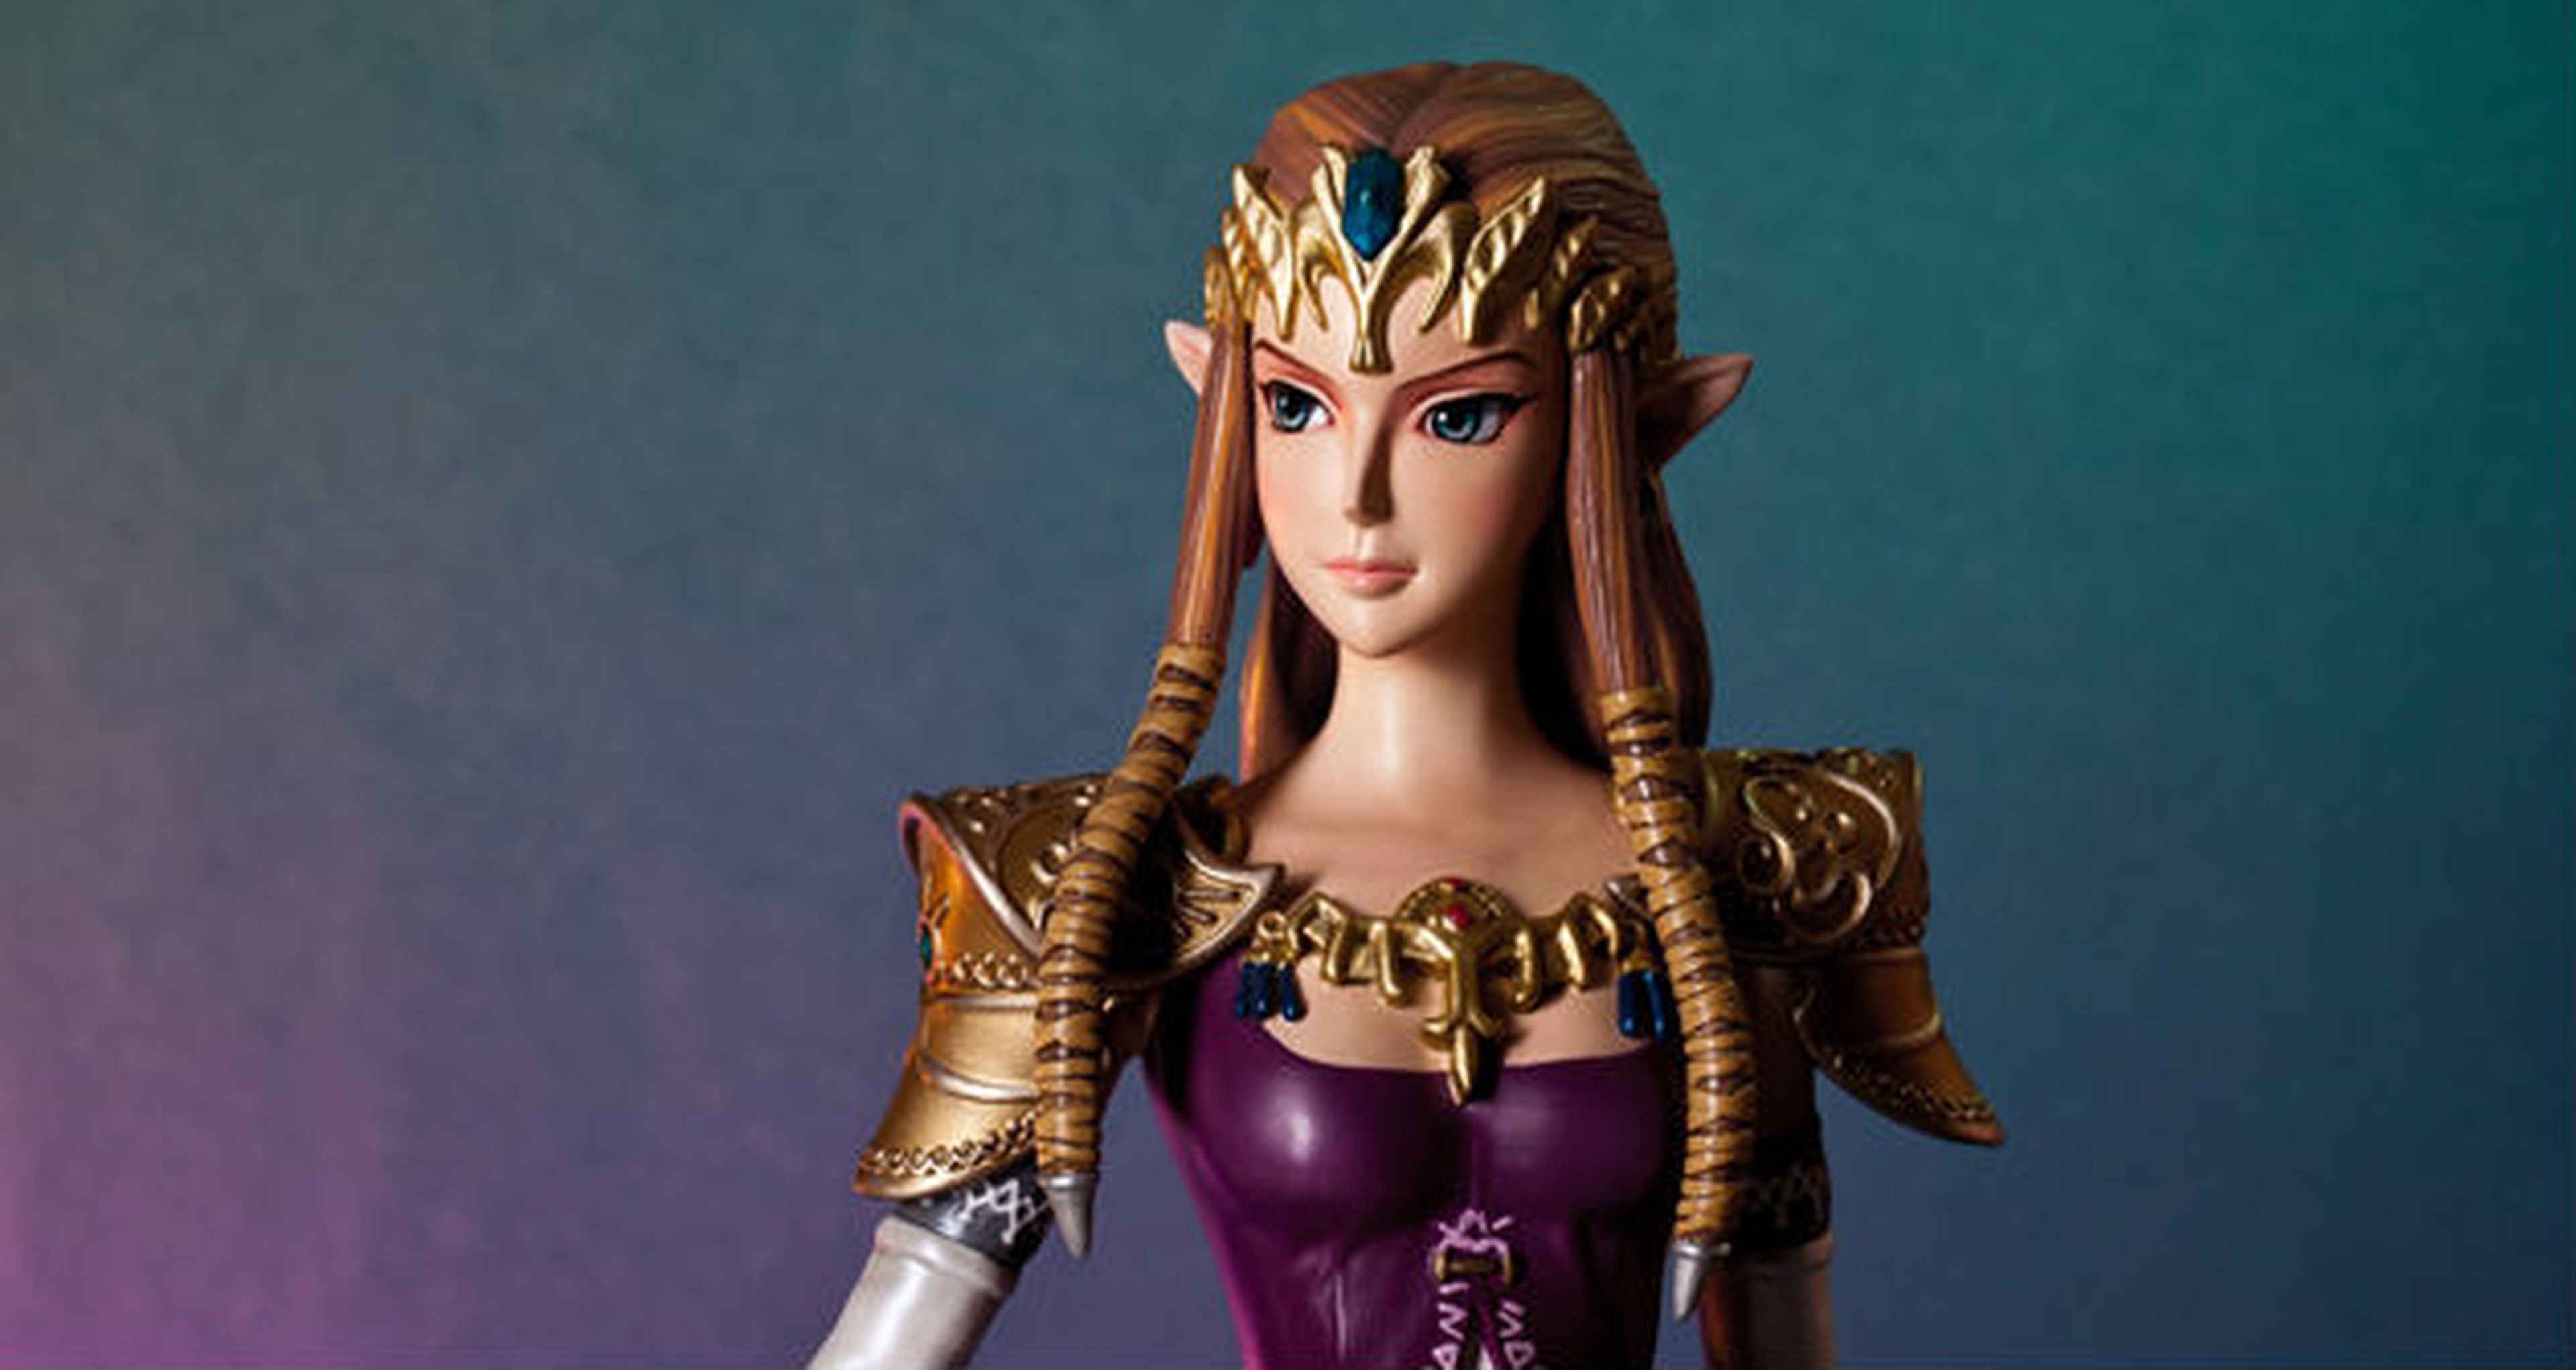 Una figura de coleccionista de la Princesa Zelda